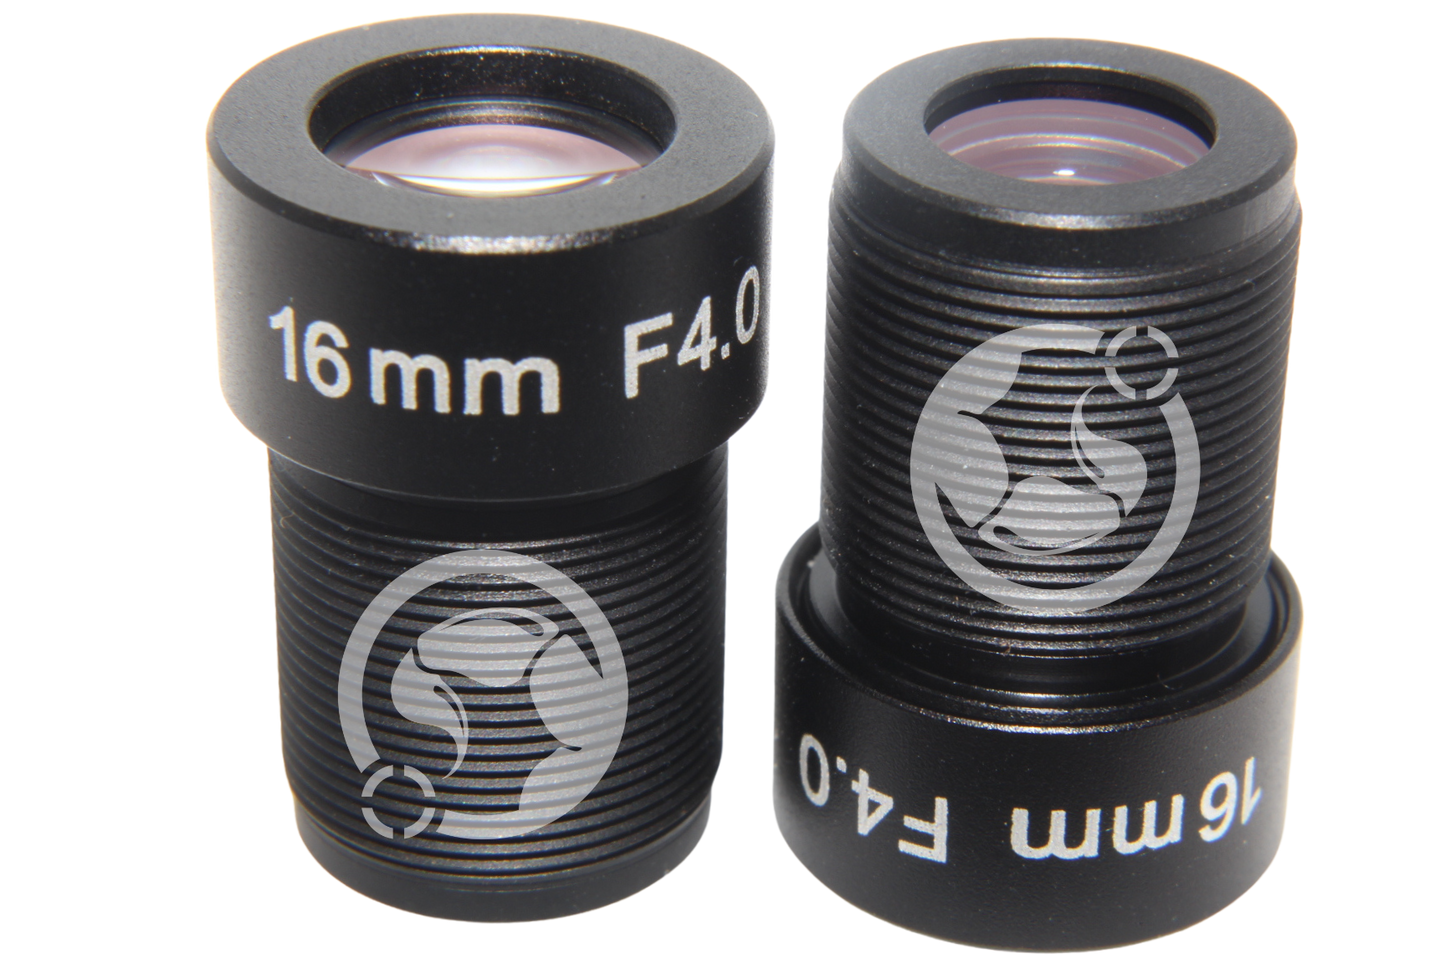 M12 Lens 16mm F4.0